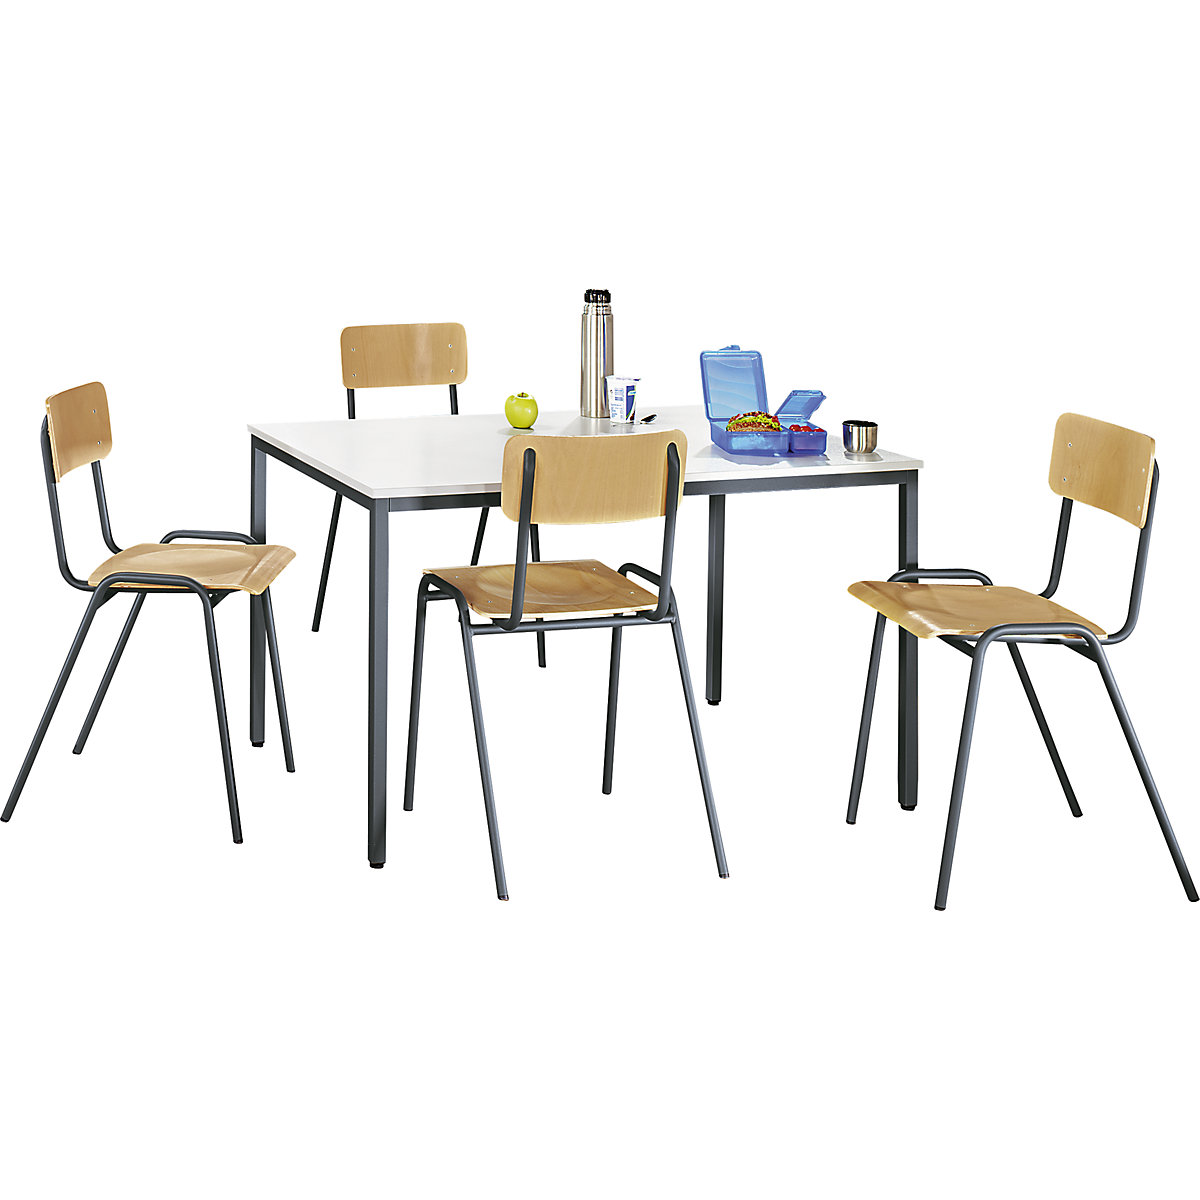 EUROKRAFTbasic Mehrzweck-Sitzgruppe, 1 Tisch, 4 Stühle, Tischplatte lichtgrau, Gestell basaltgrau